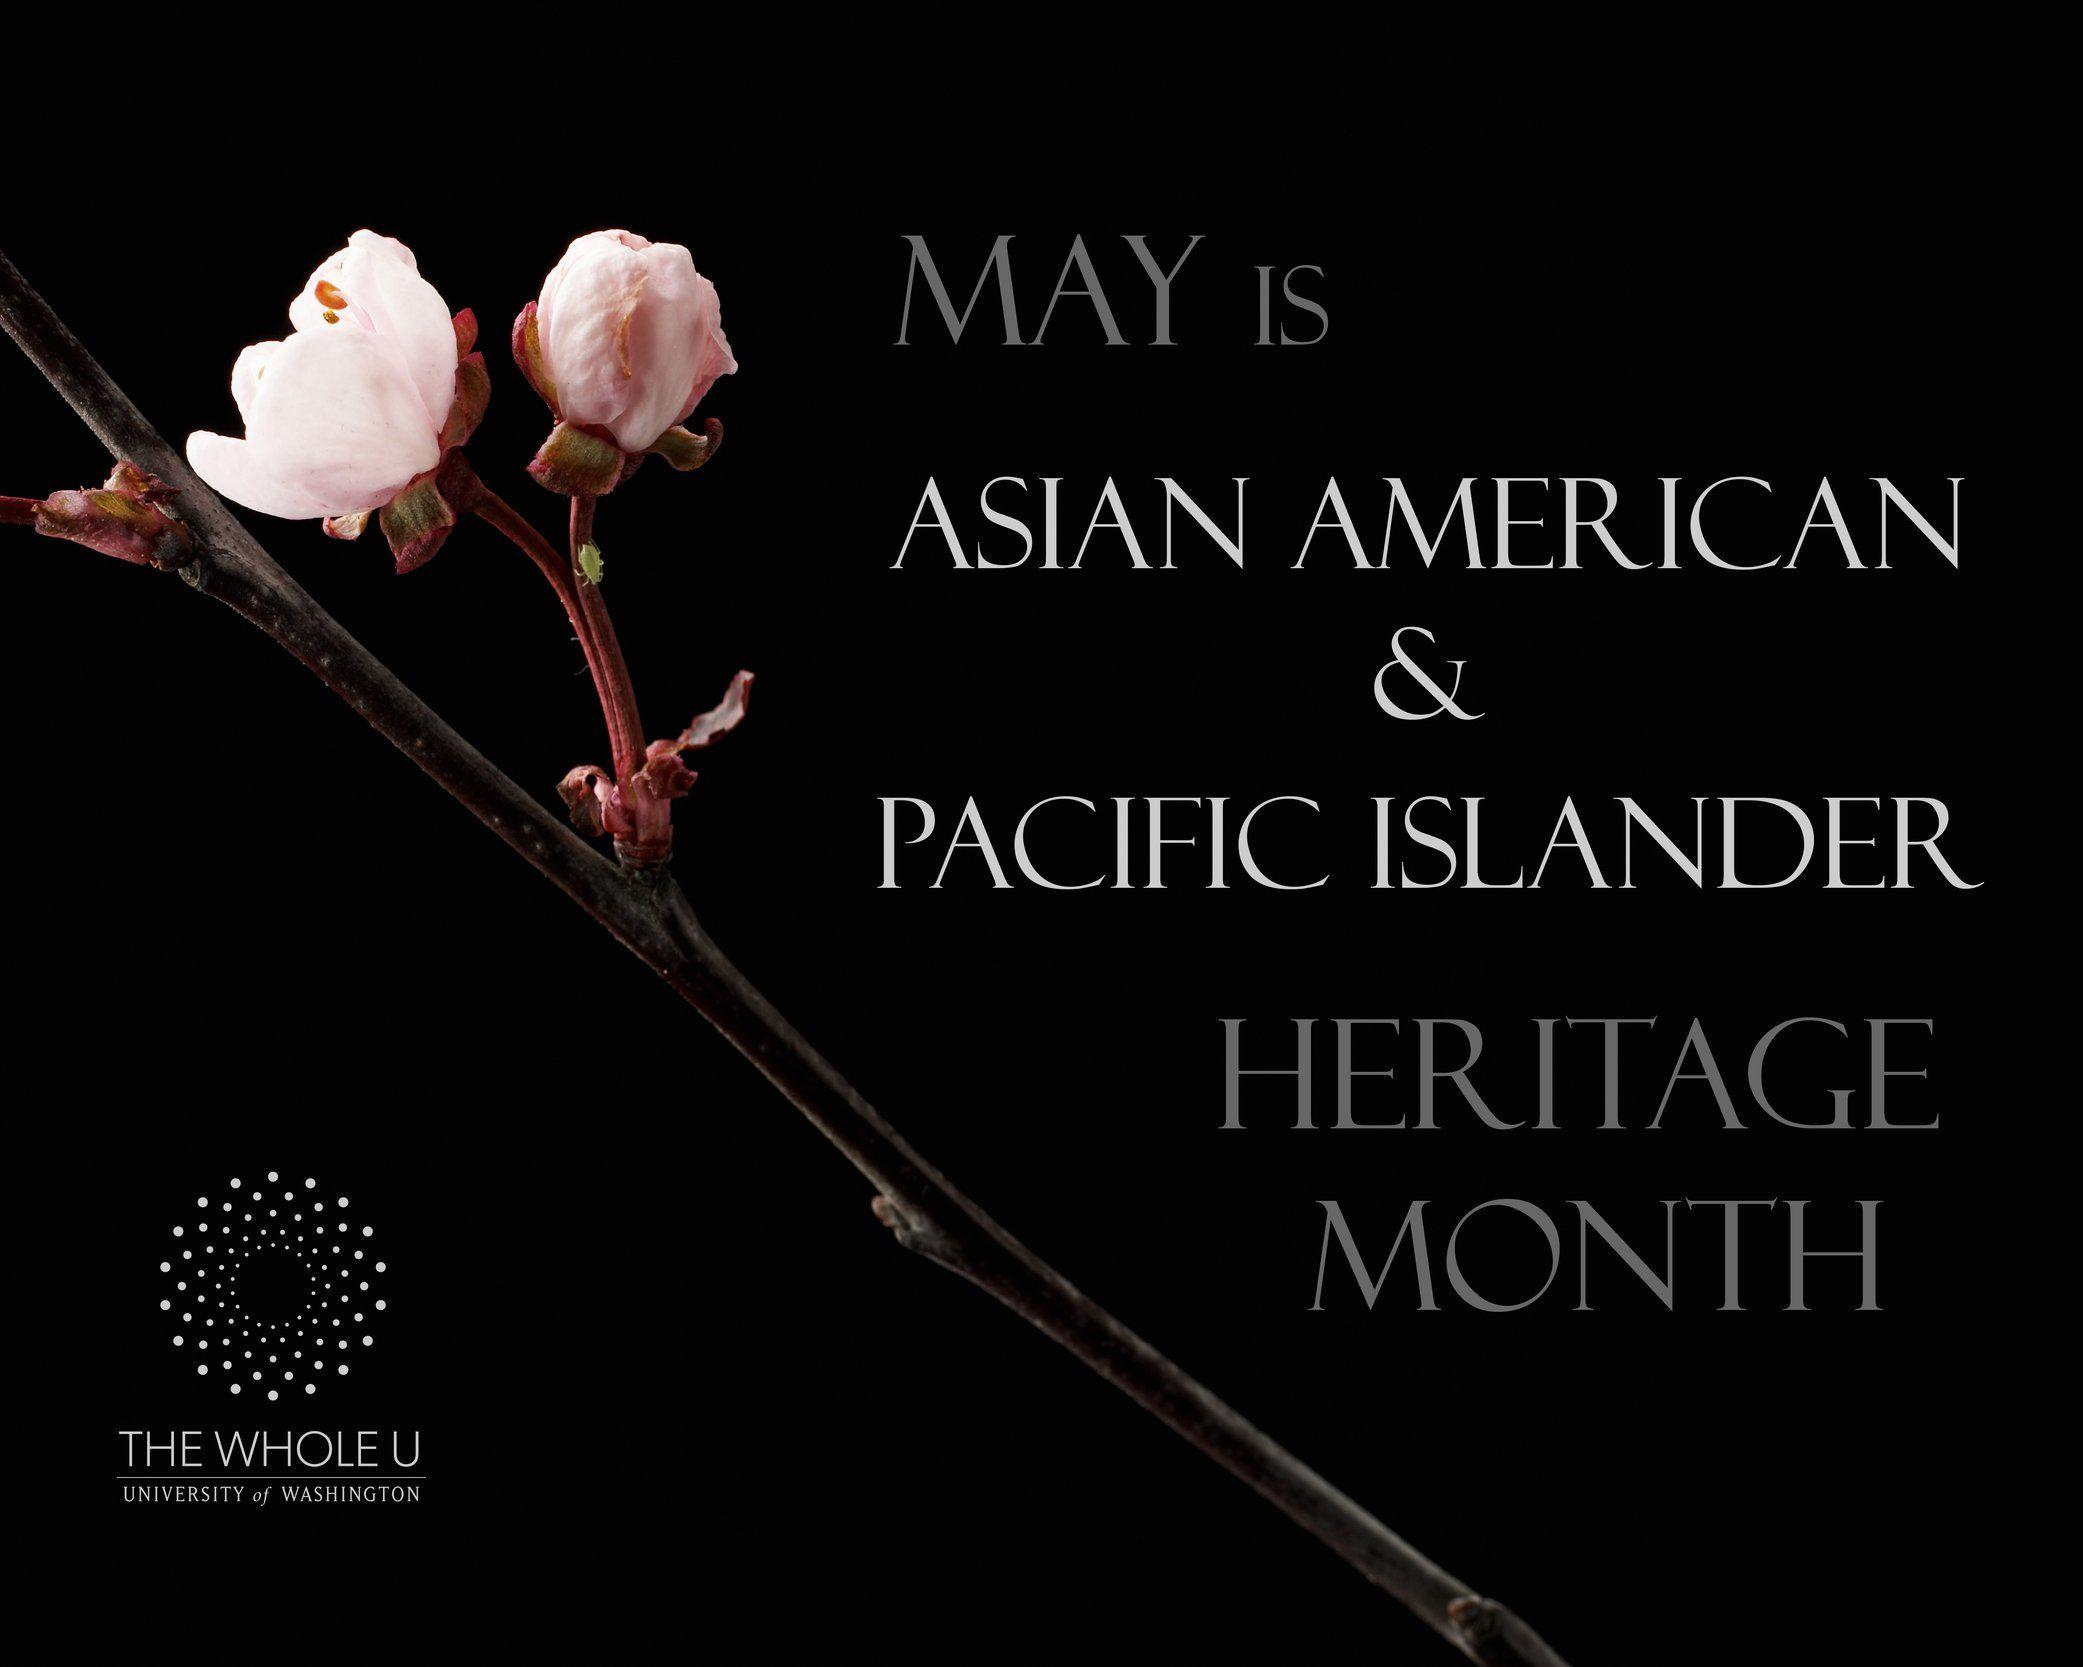 True S. reccomend Asian pacific islander month activities